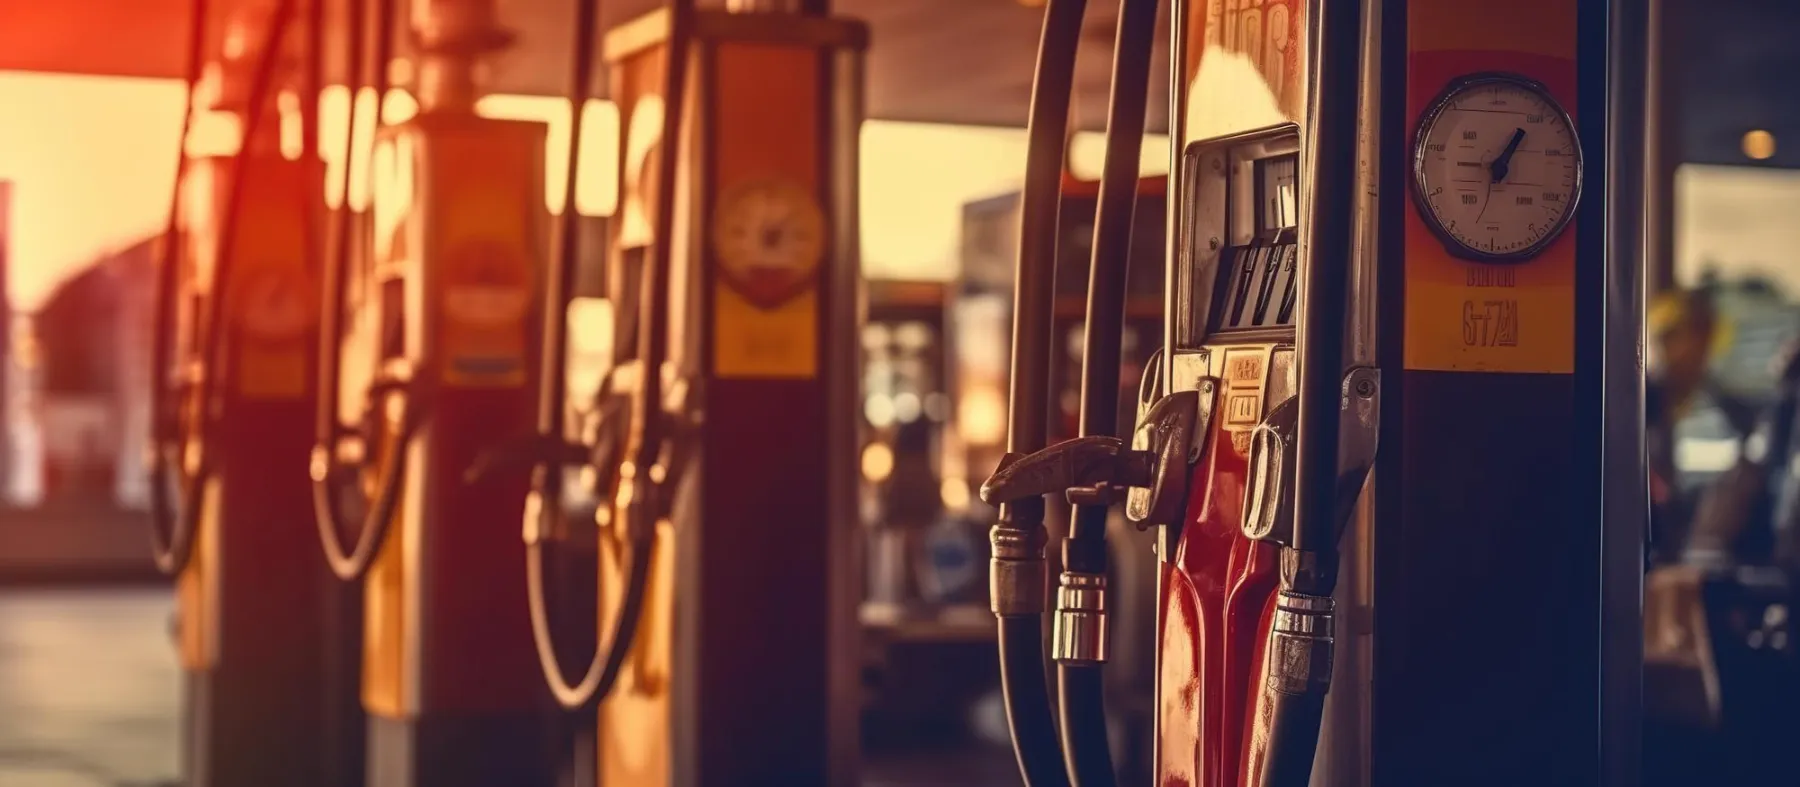 עדכון: מחירי הדלק יישארו ללא שינוי באוקטובר